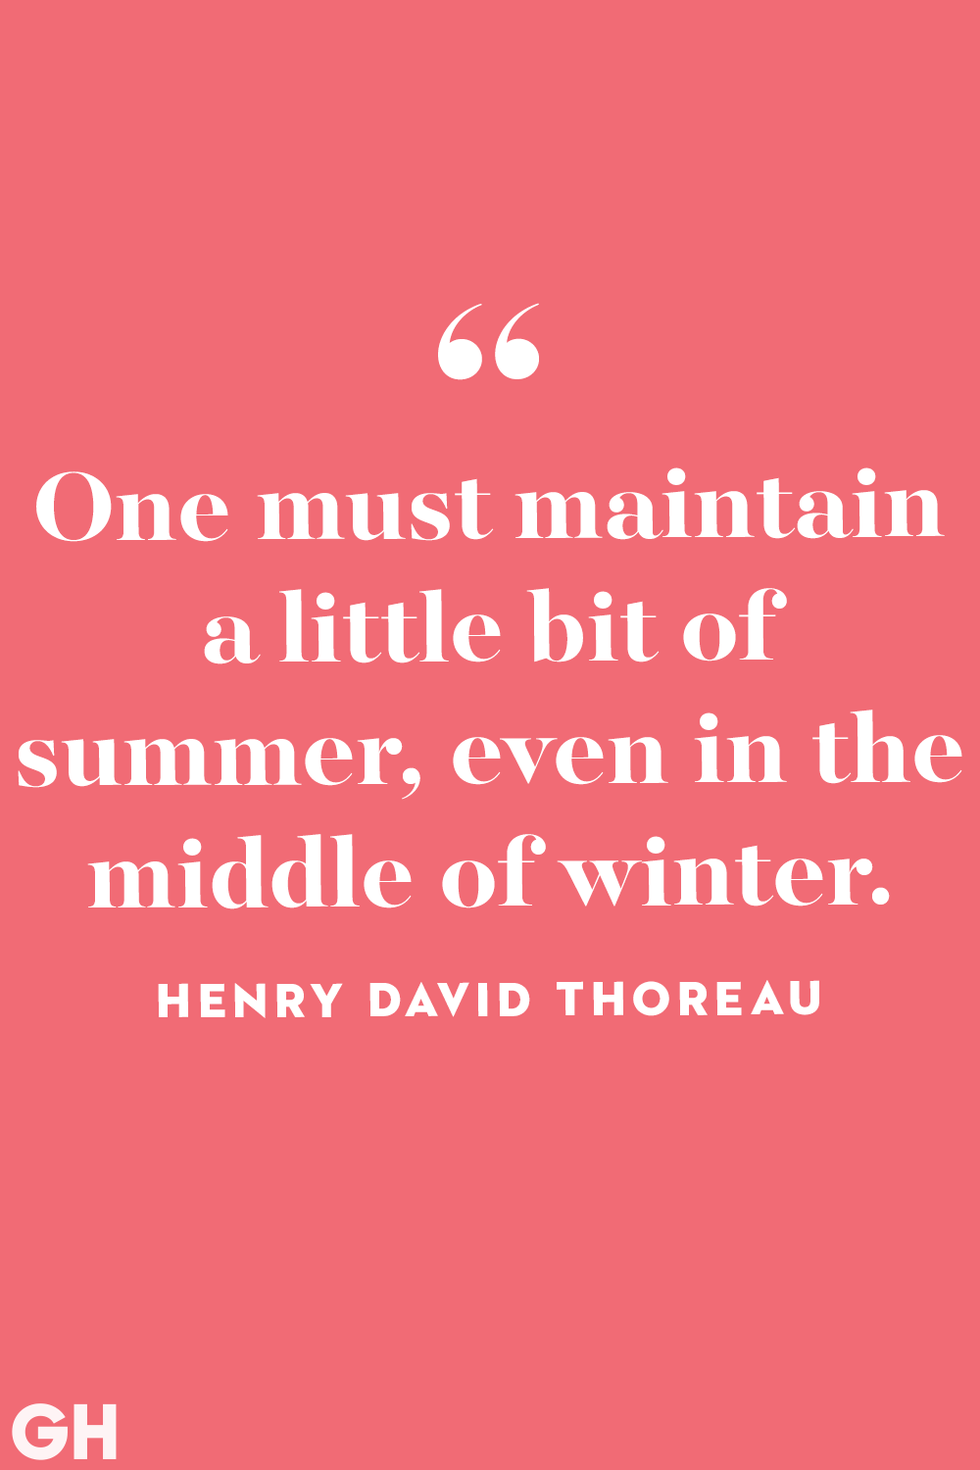 summer quotes henry david thoreau